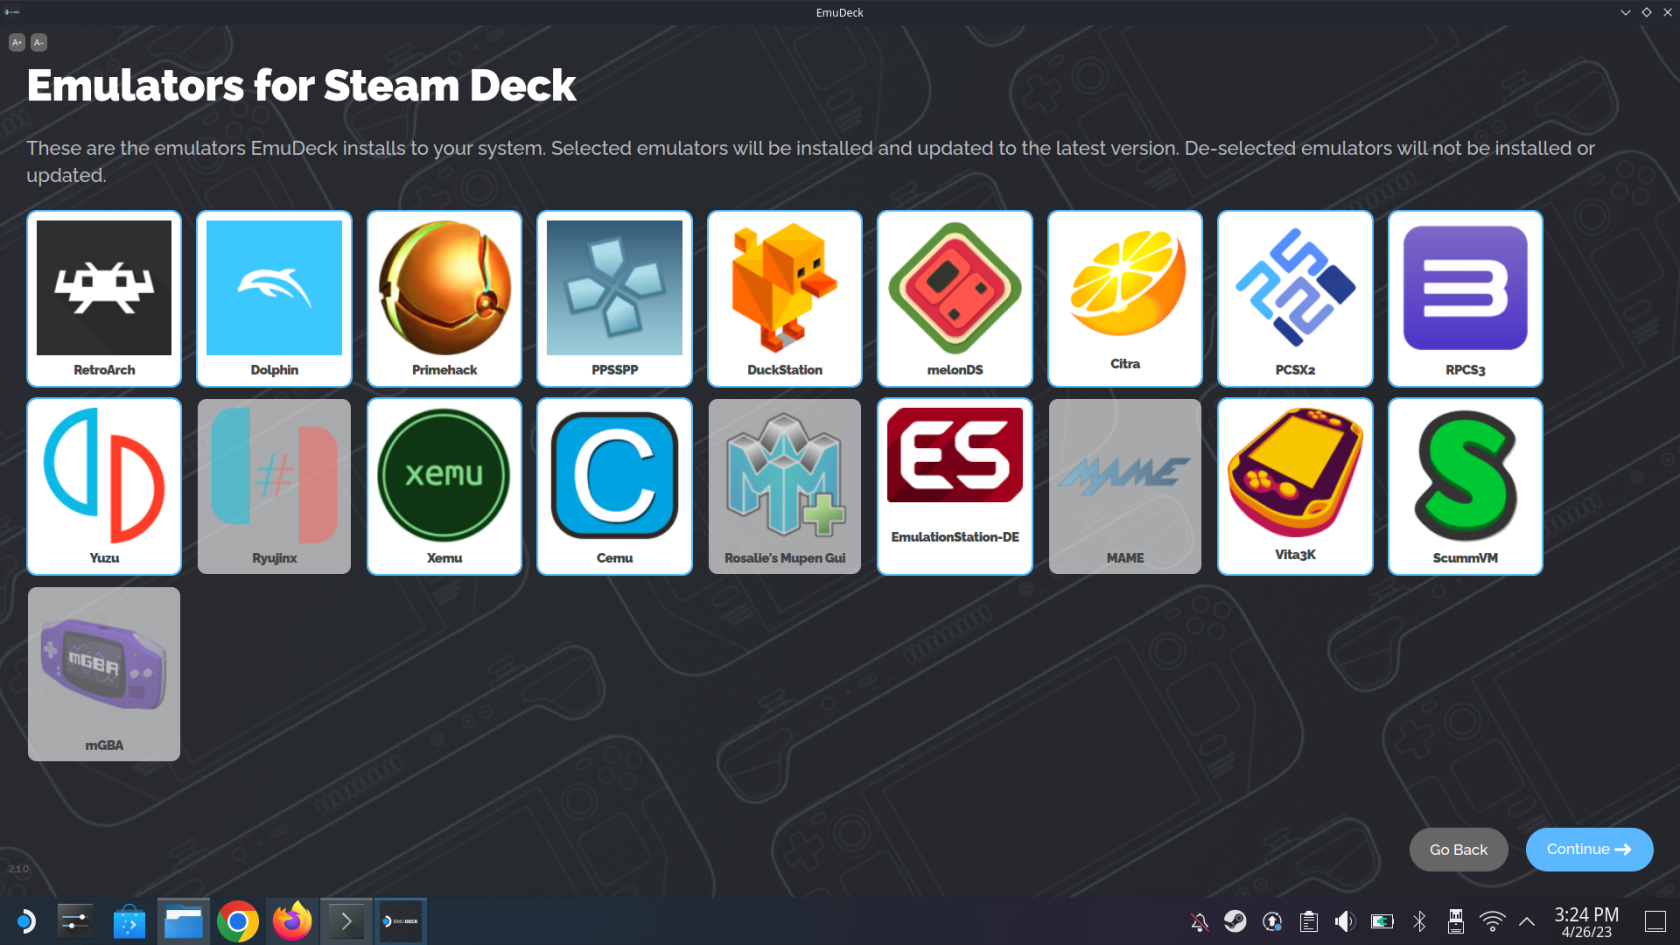 EmuDeck: Guia d'emulació de Steam Deck